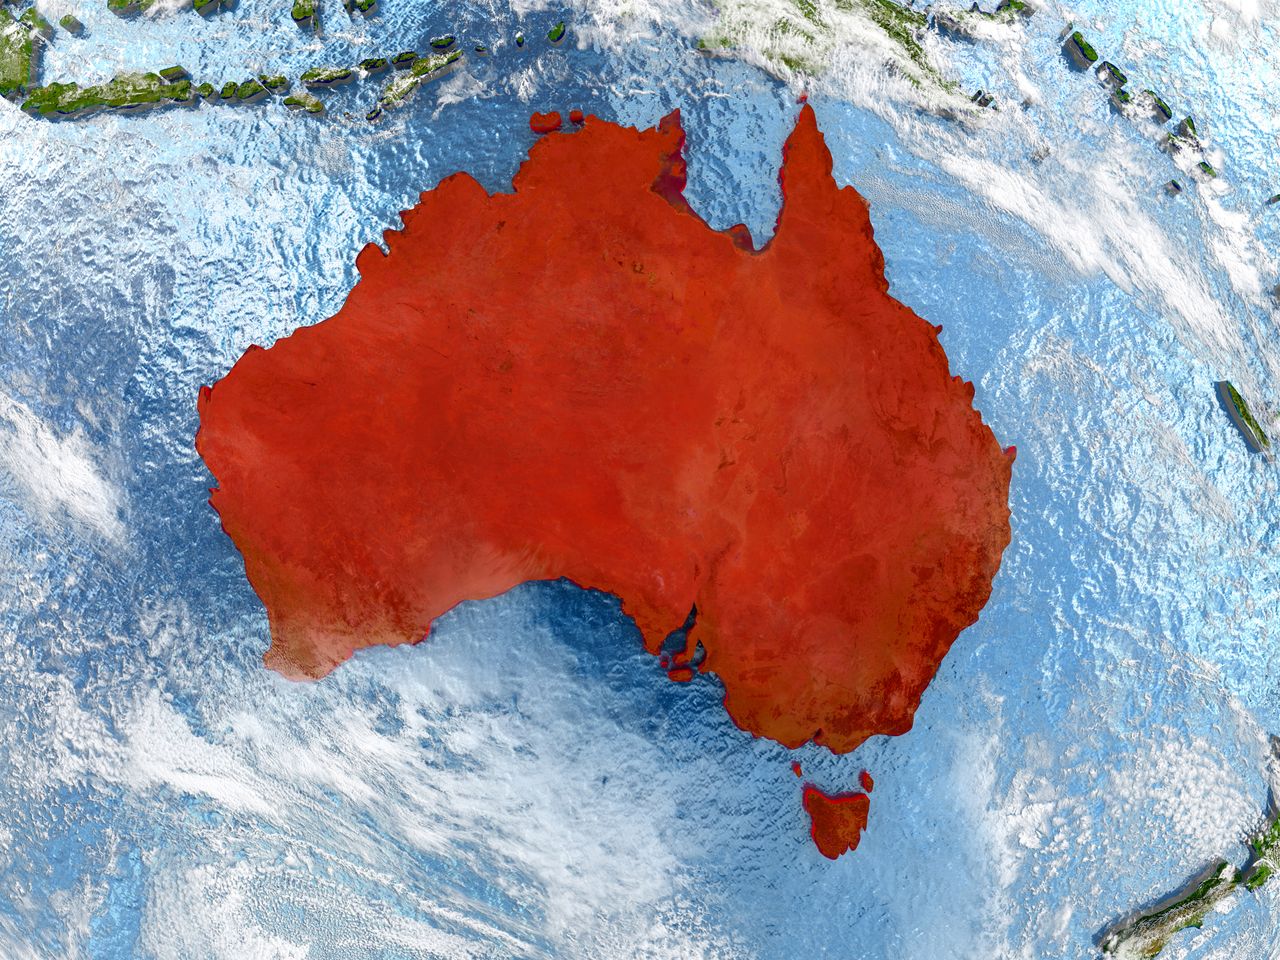 NASA analizuje globalne skutki pożarów w Australii. Zdjęcia ujawniają wiele